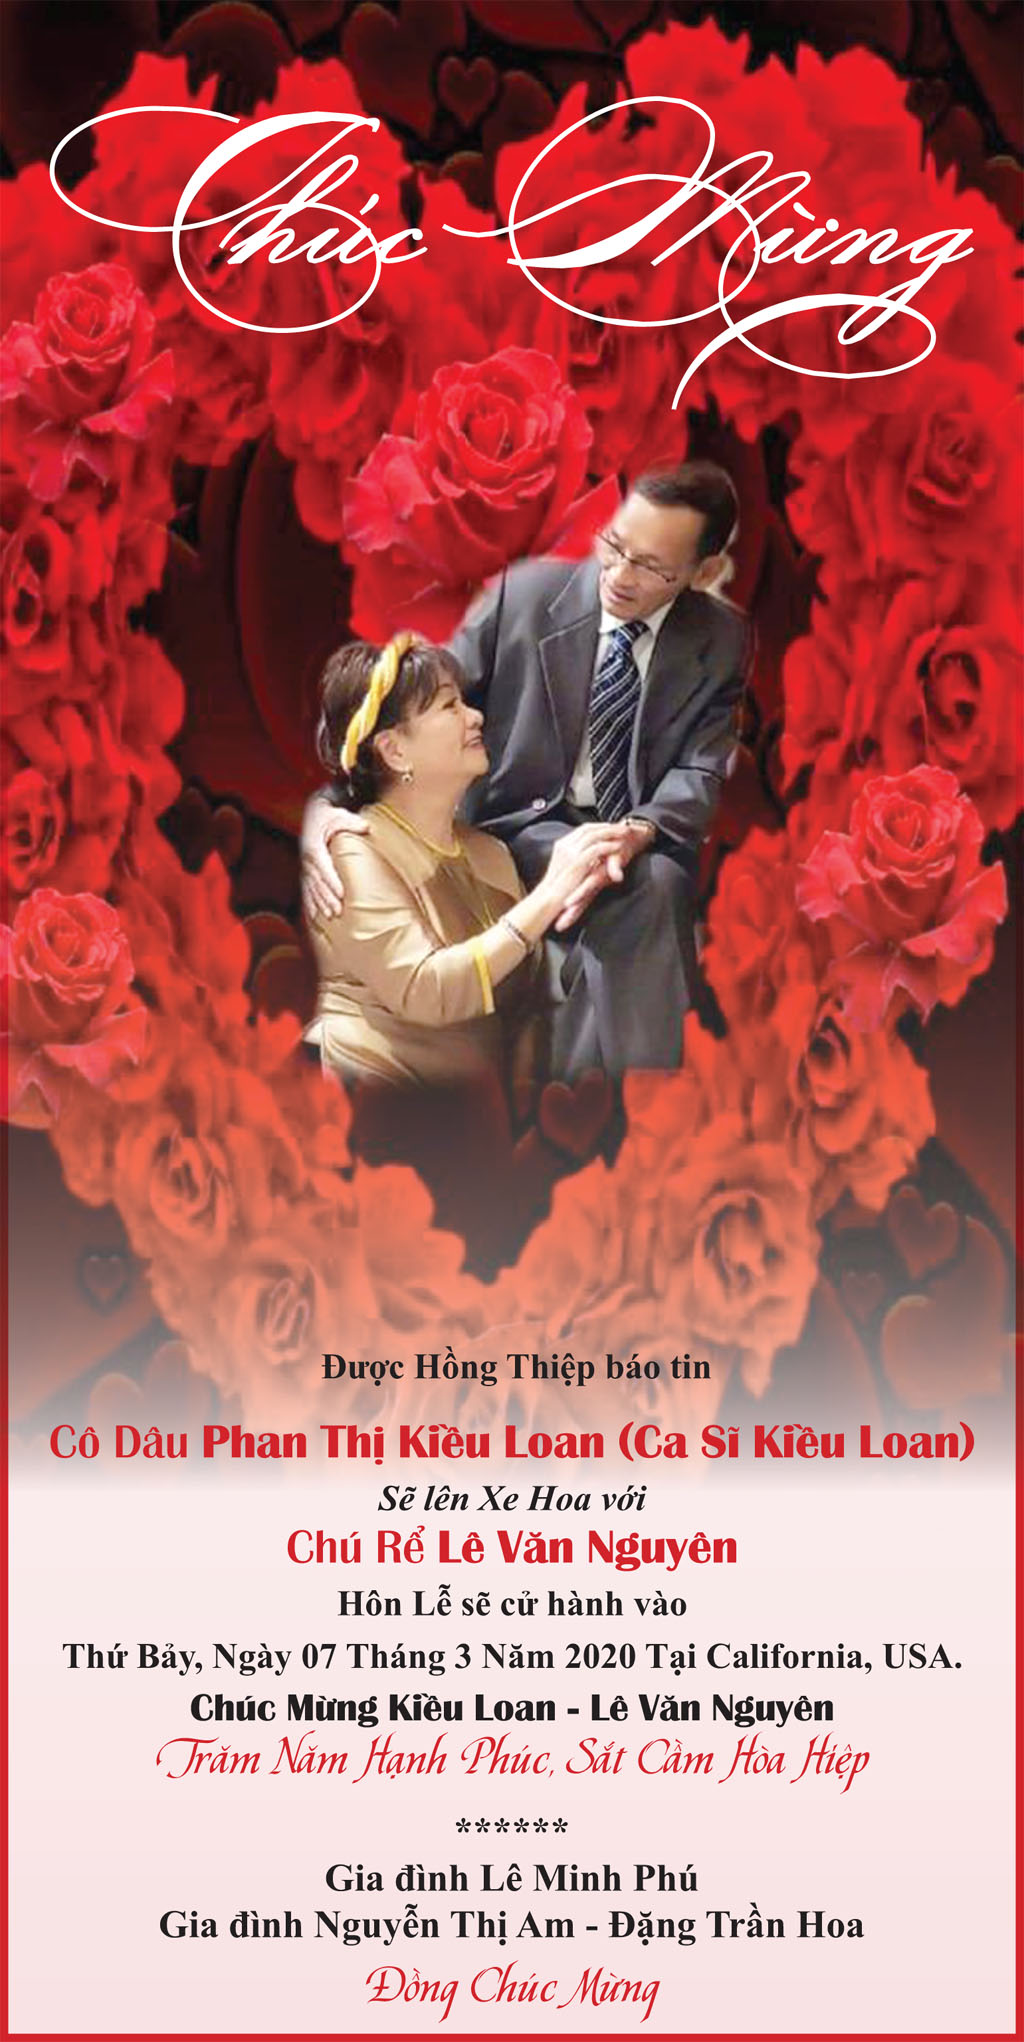 Chúc Mừng Cô Dâu Ca Sĩ Kiều Loan - Chú Rể Lê Văn Nguyên - Nguoi Viet Online